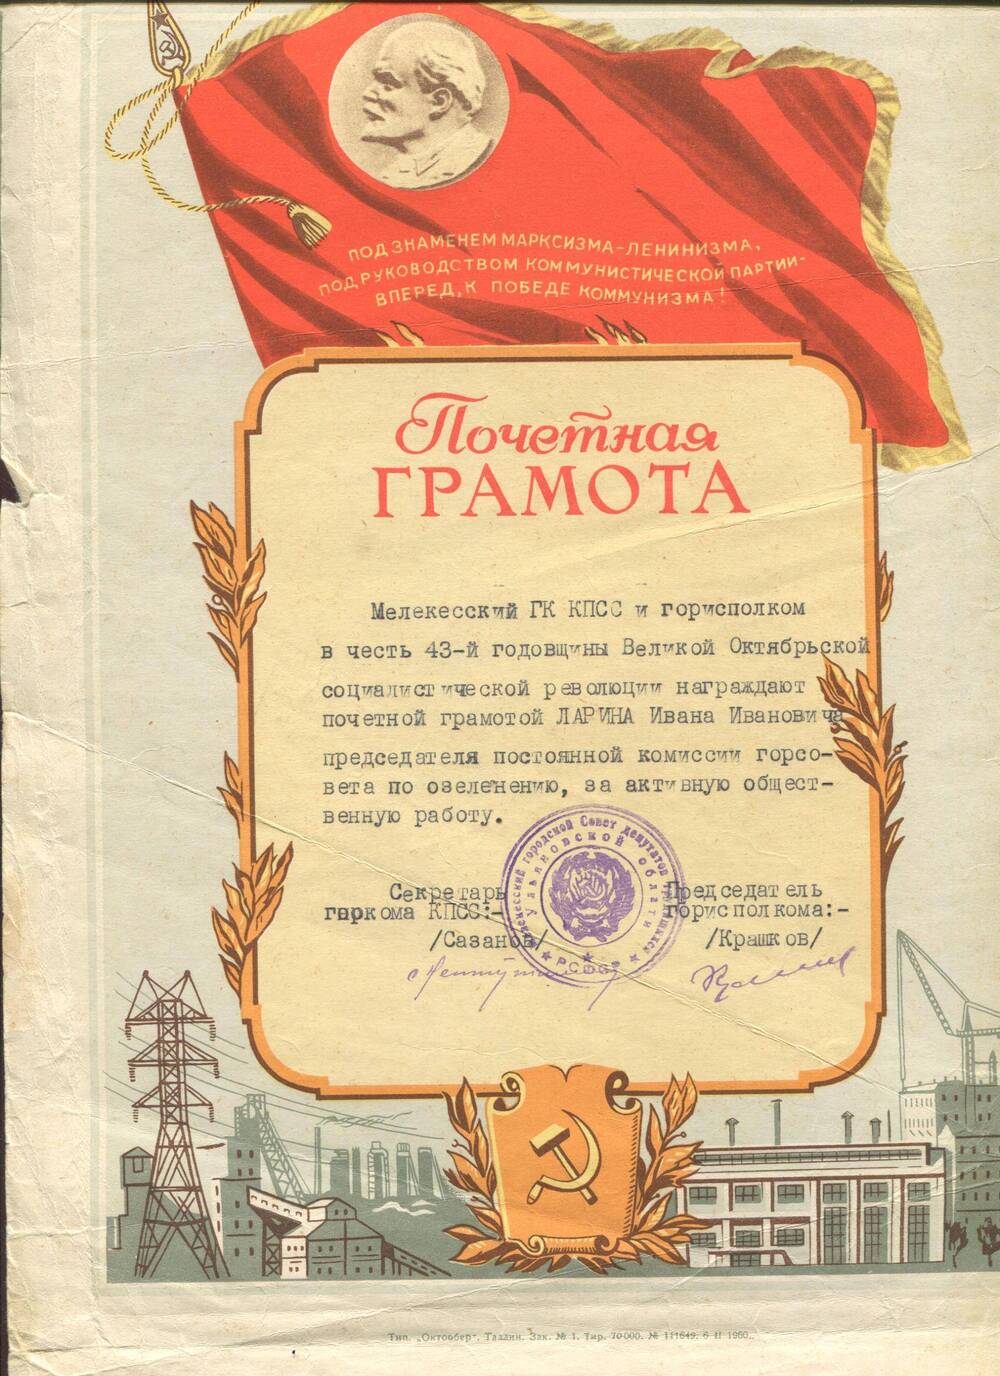 Почетная грамота ГК КПСС и горисполкома И.И.Ларину. г.Мелекесс, 1961 г.